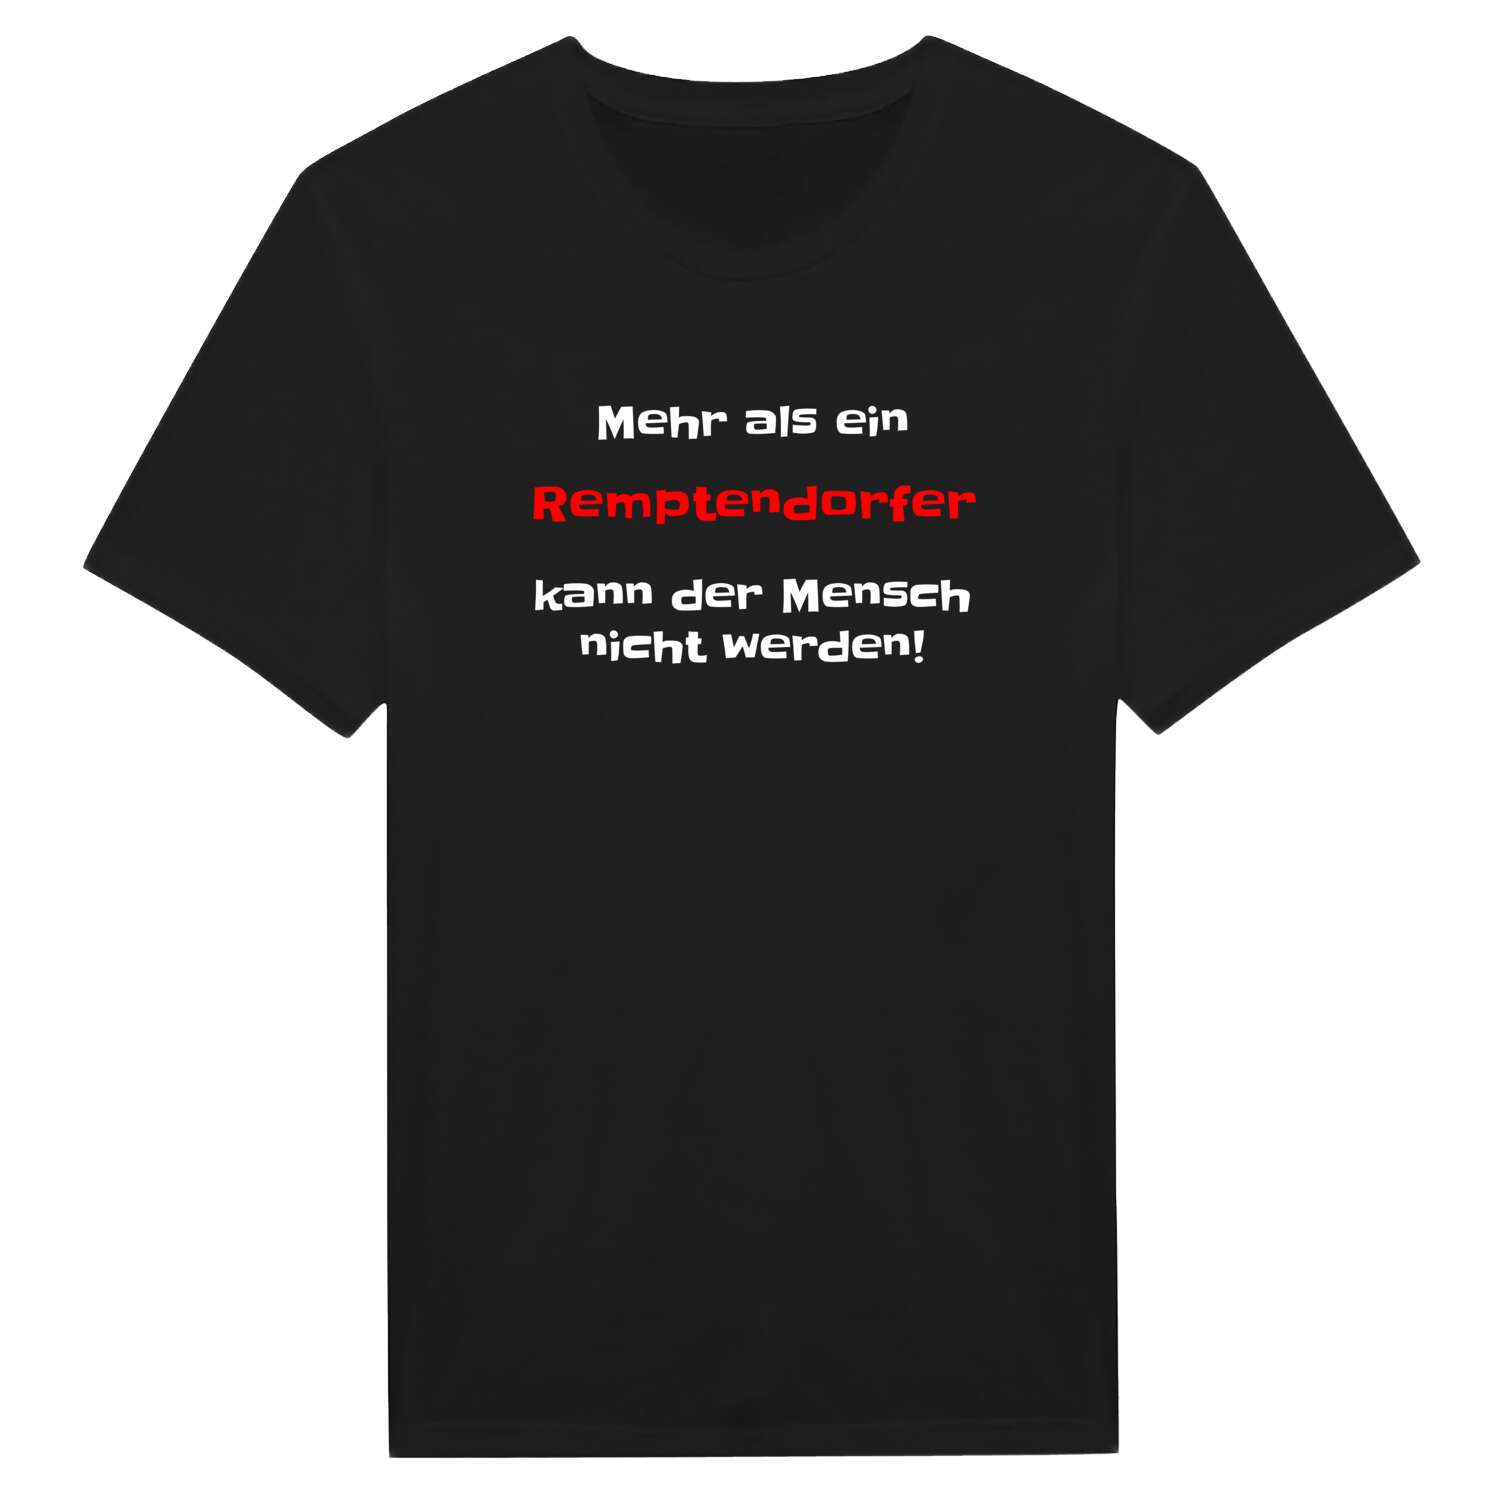 Remptendorf T-Shirt »Mehr als ein«